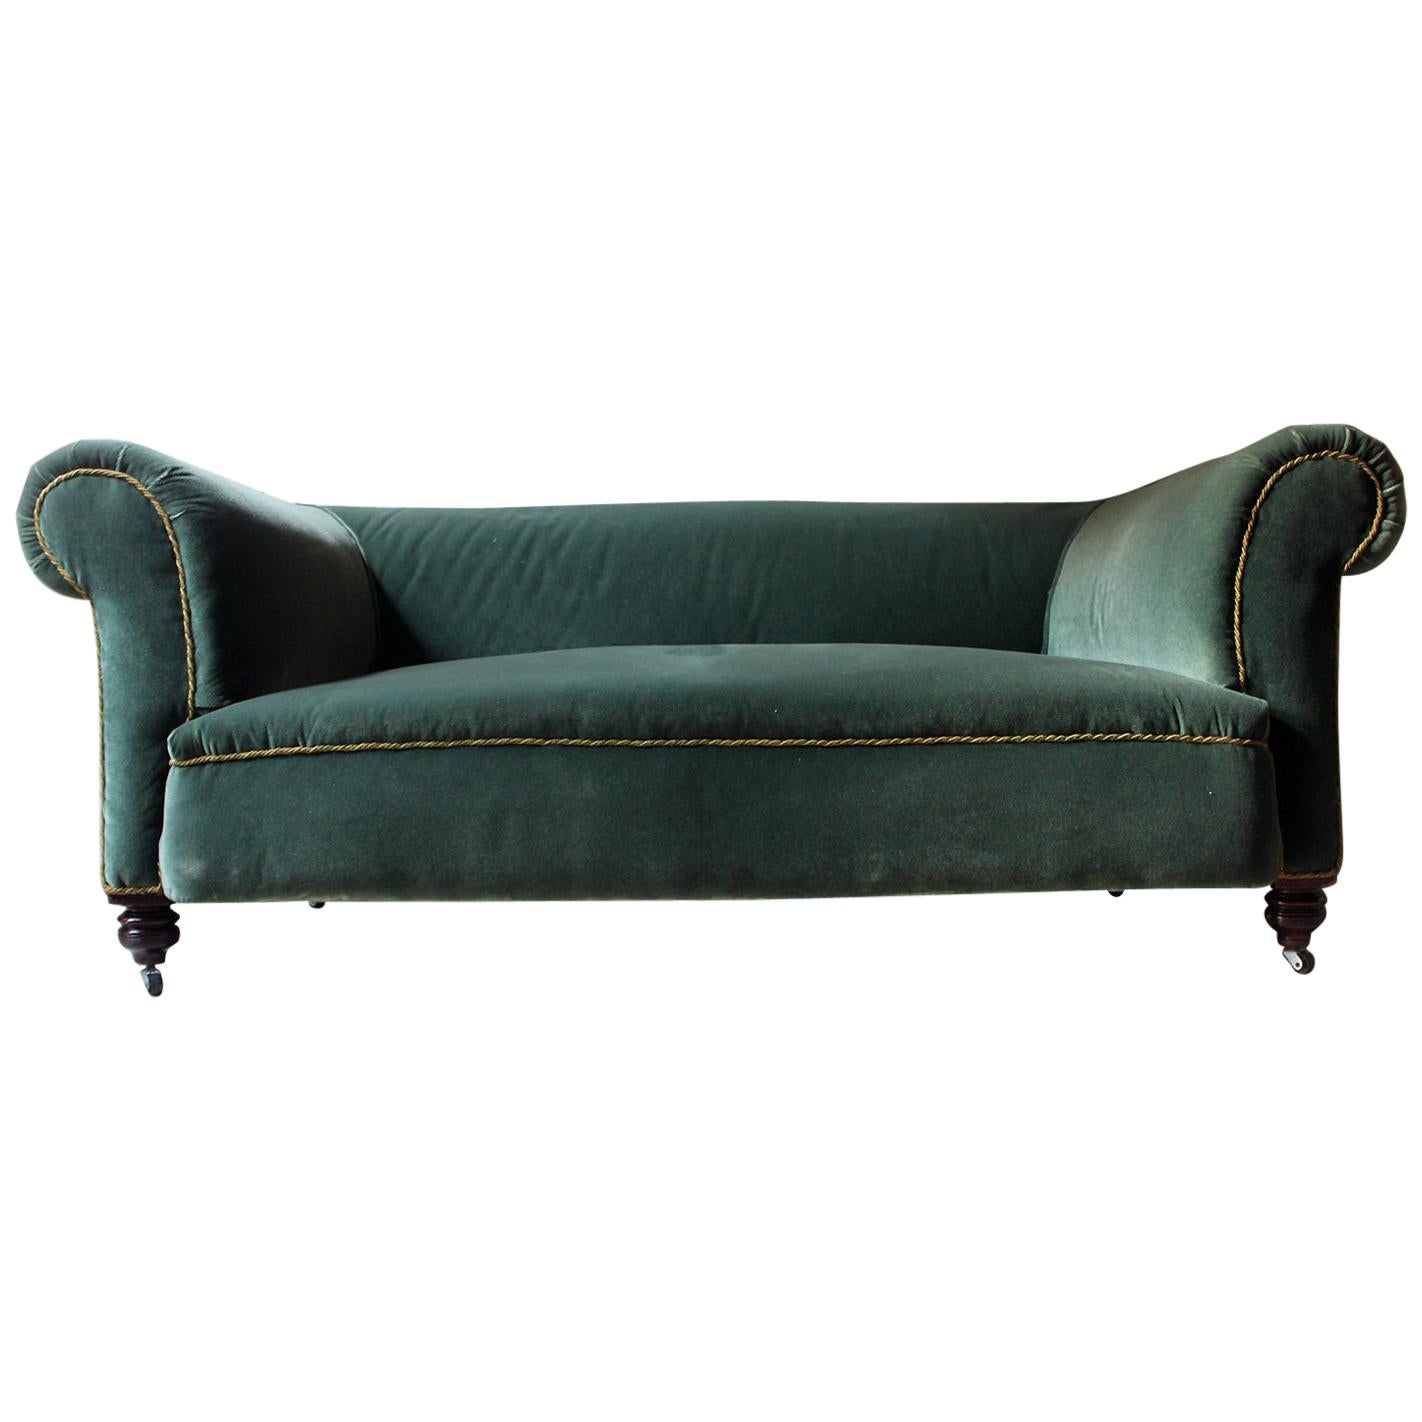 Late Victorian Green Velvet Upholstered Chesterfield Sofa, circa 1900